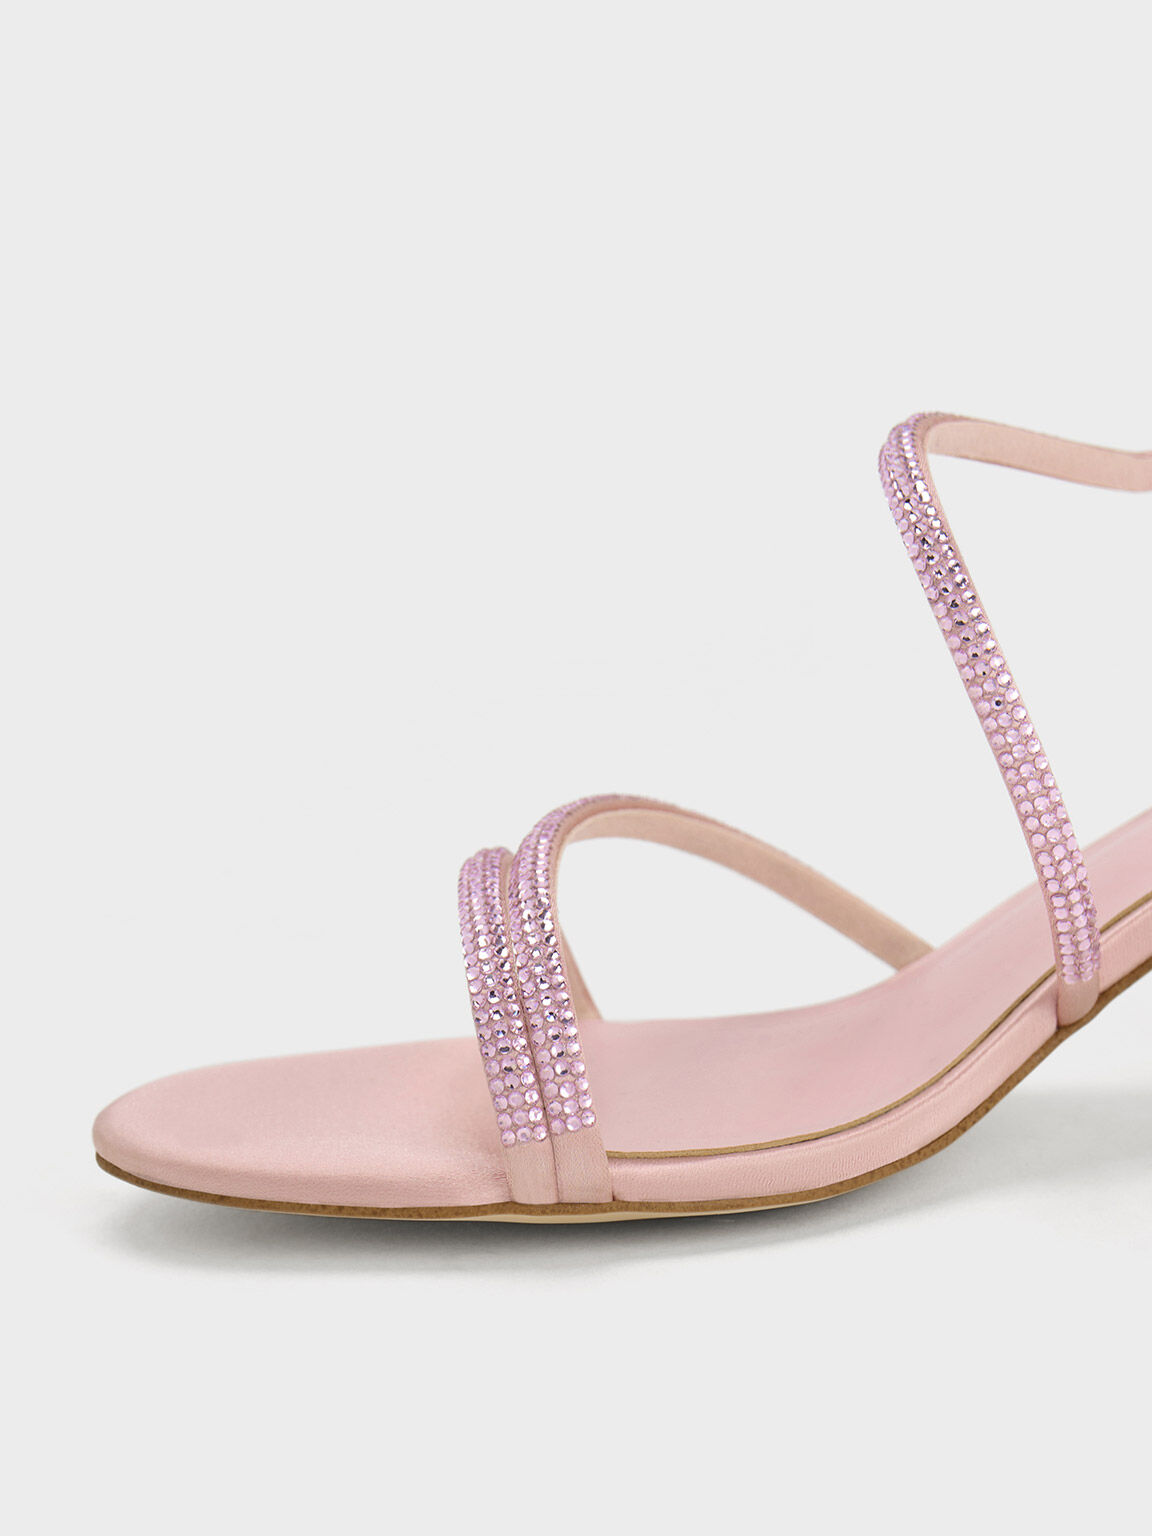 Satin Crystal-Embellished Block-Heel Strappy Sandals, Light Pink, hi-res